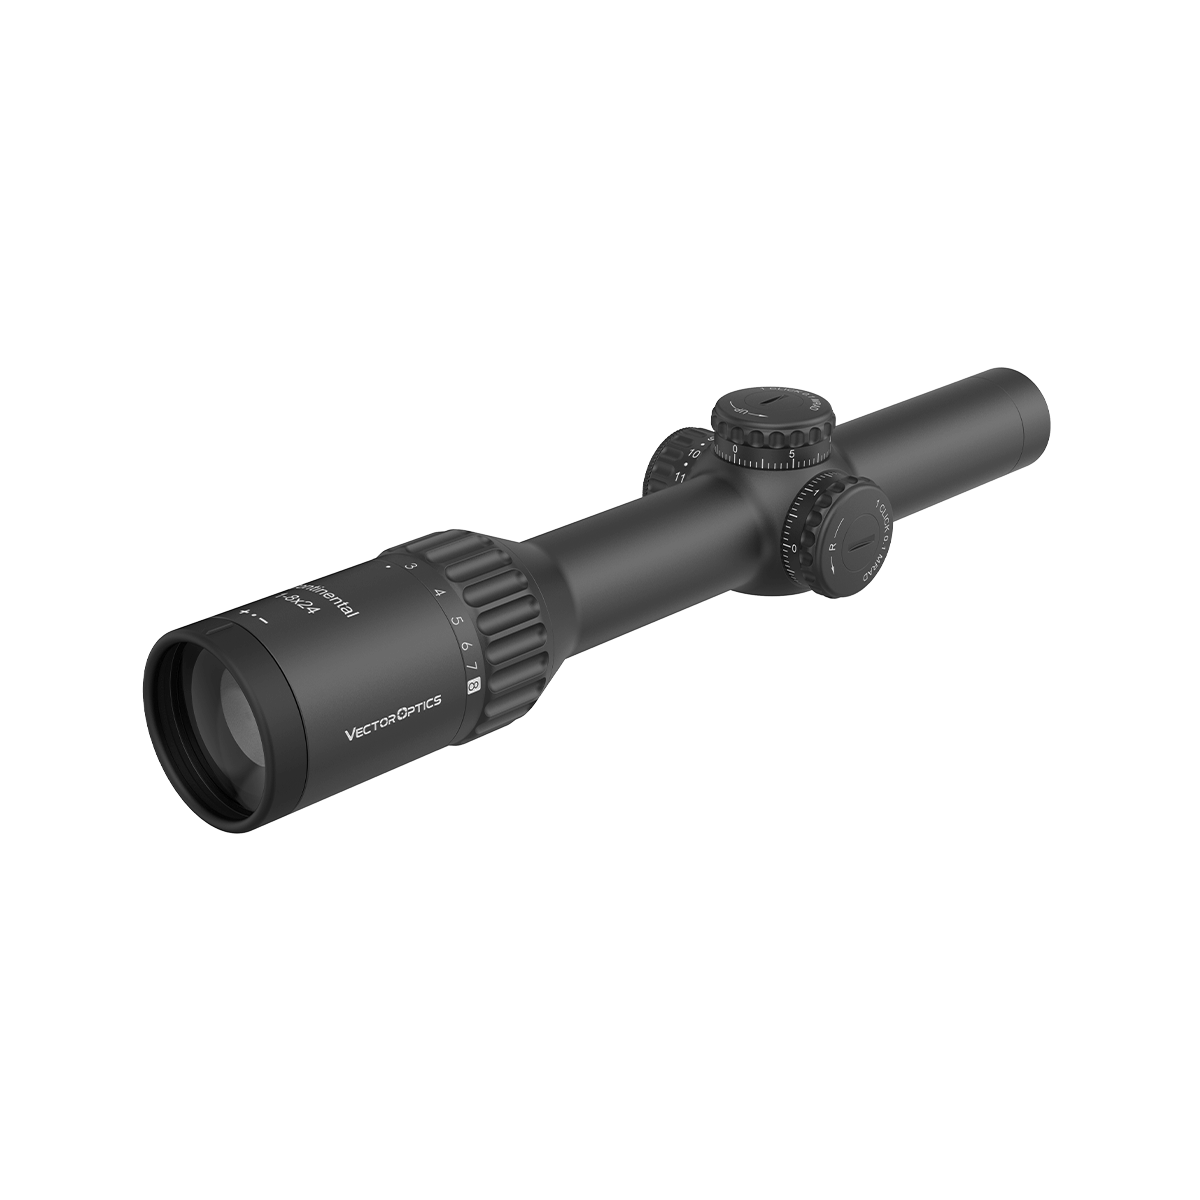 Continental x8 1-8x24i ED Fiber LPVO Riflescope